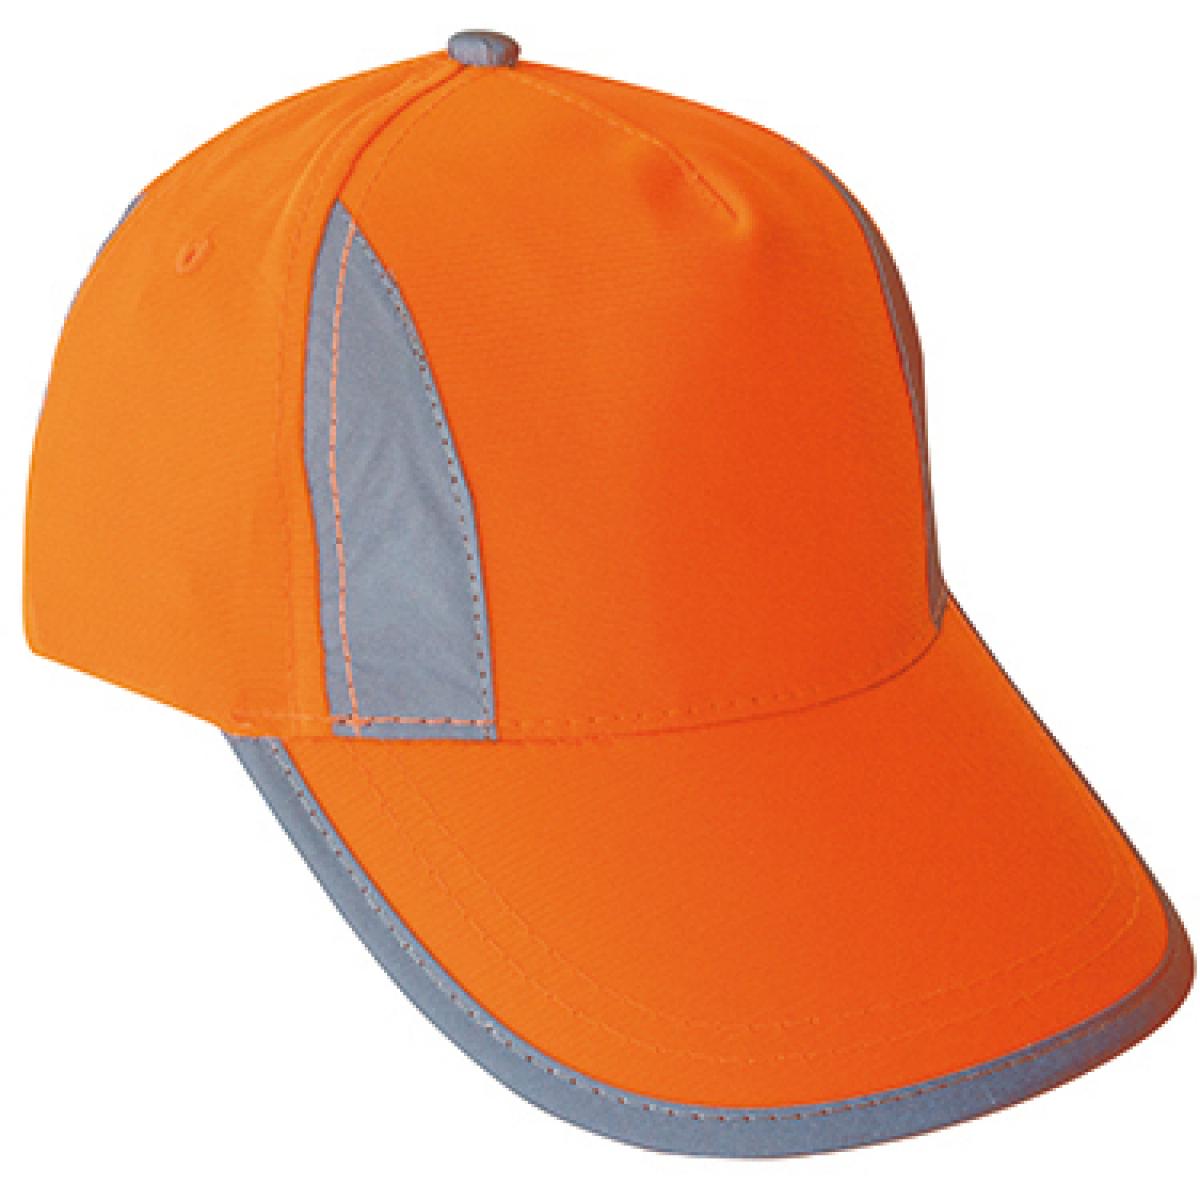 Hersteller: Korntex Herstellernummer: KXPCAP Artikelbezeichnung: Kinder - Sicherheitsmütze Hi-Viz-, Fluo-, Reflections-Cap Farbe: Signal Orange